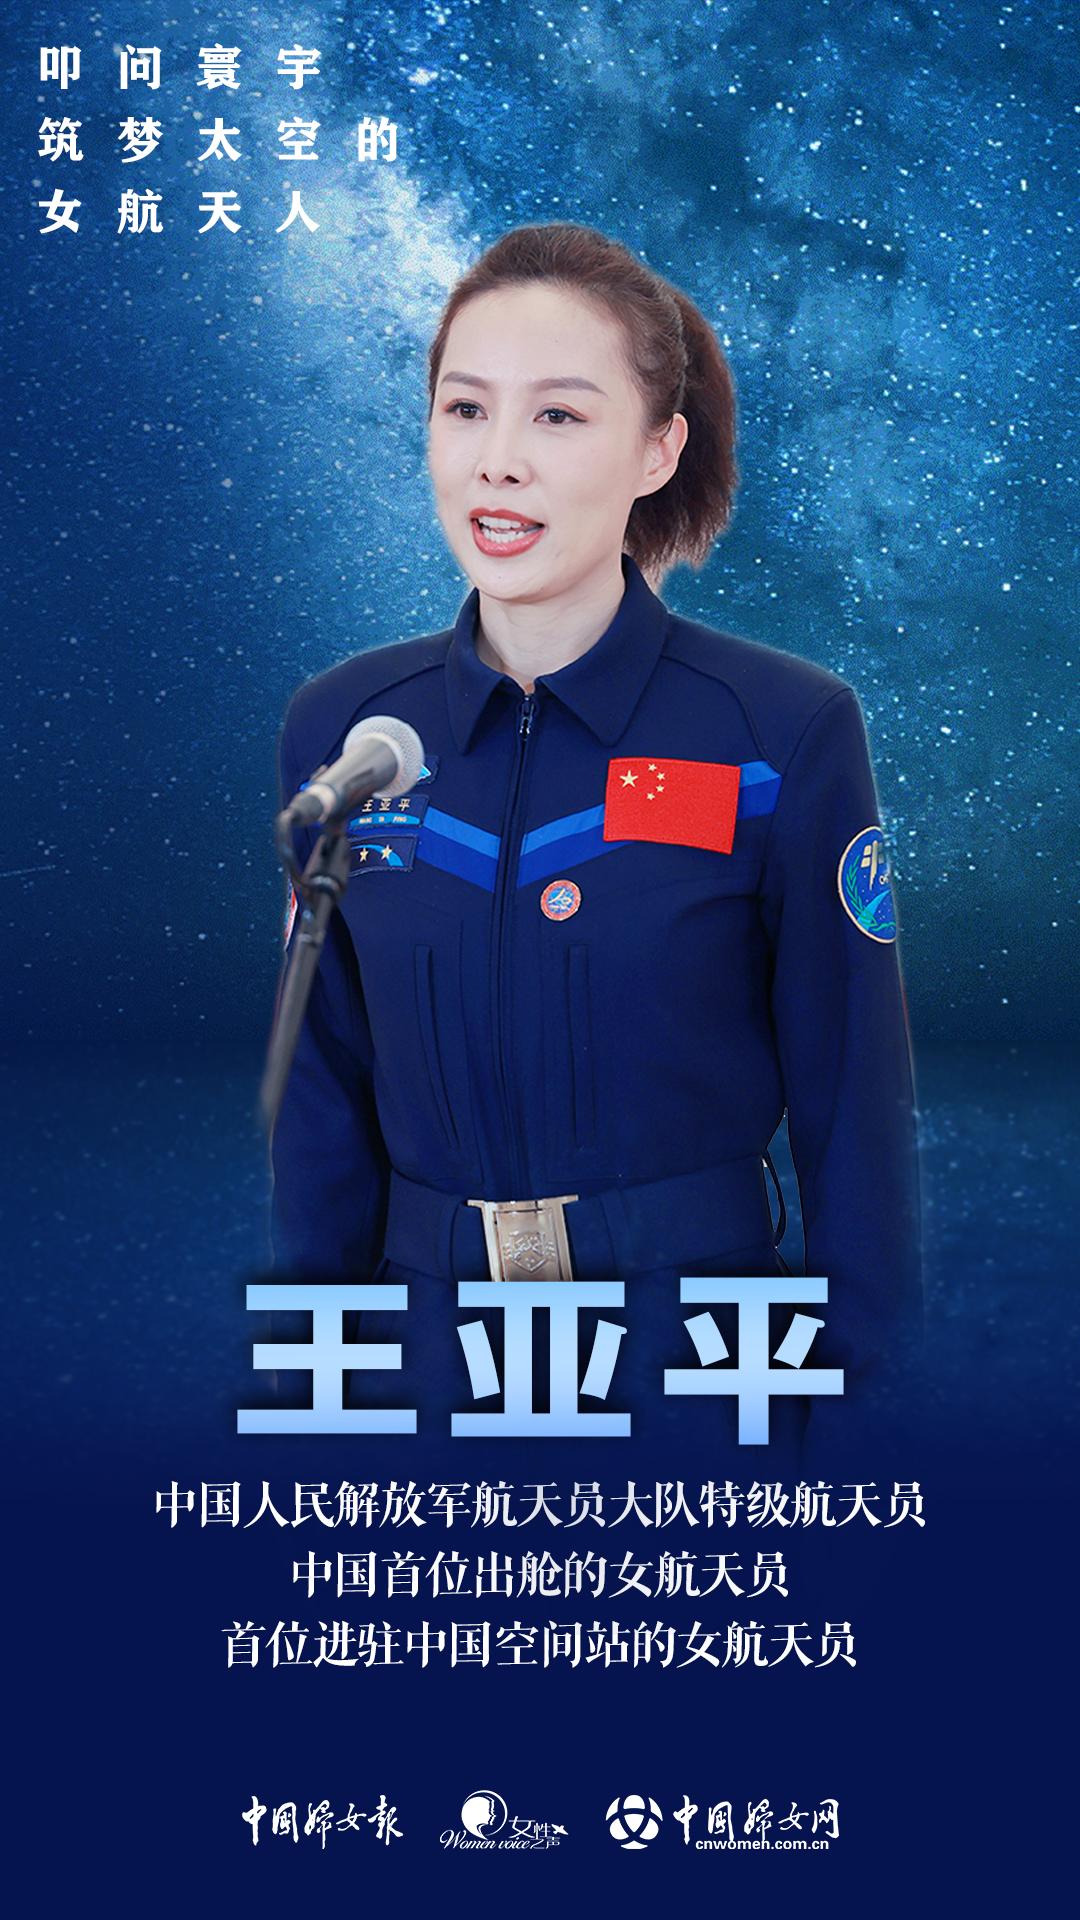 中国首位女航天员刘洋现身郑州大学开学典礼_梦想_训练_颜色